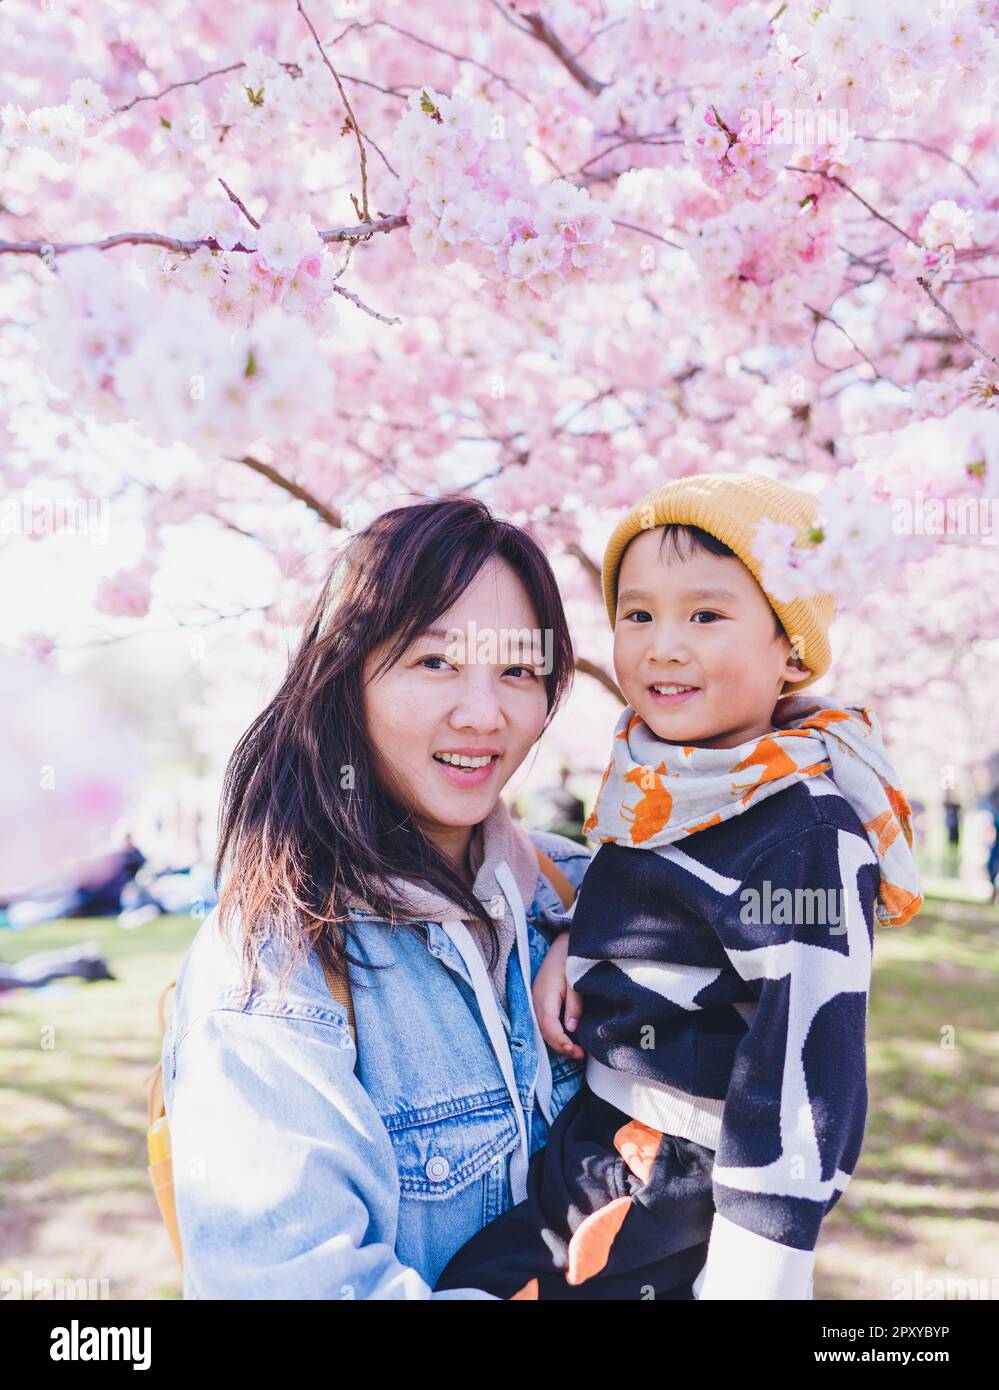 Ein Mond mit ihrem Kind, das in der Kirschblütensaison unter Sakurabäumen steht. Stockfoto